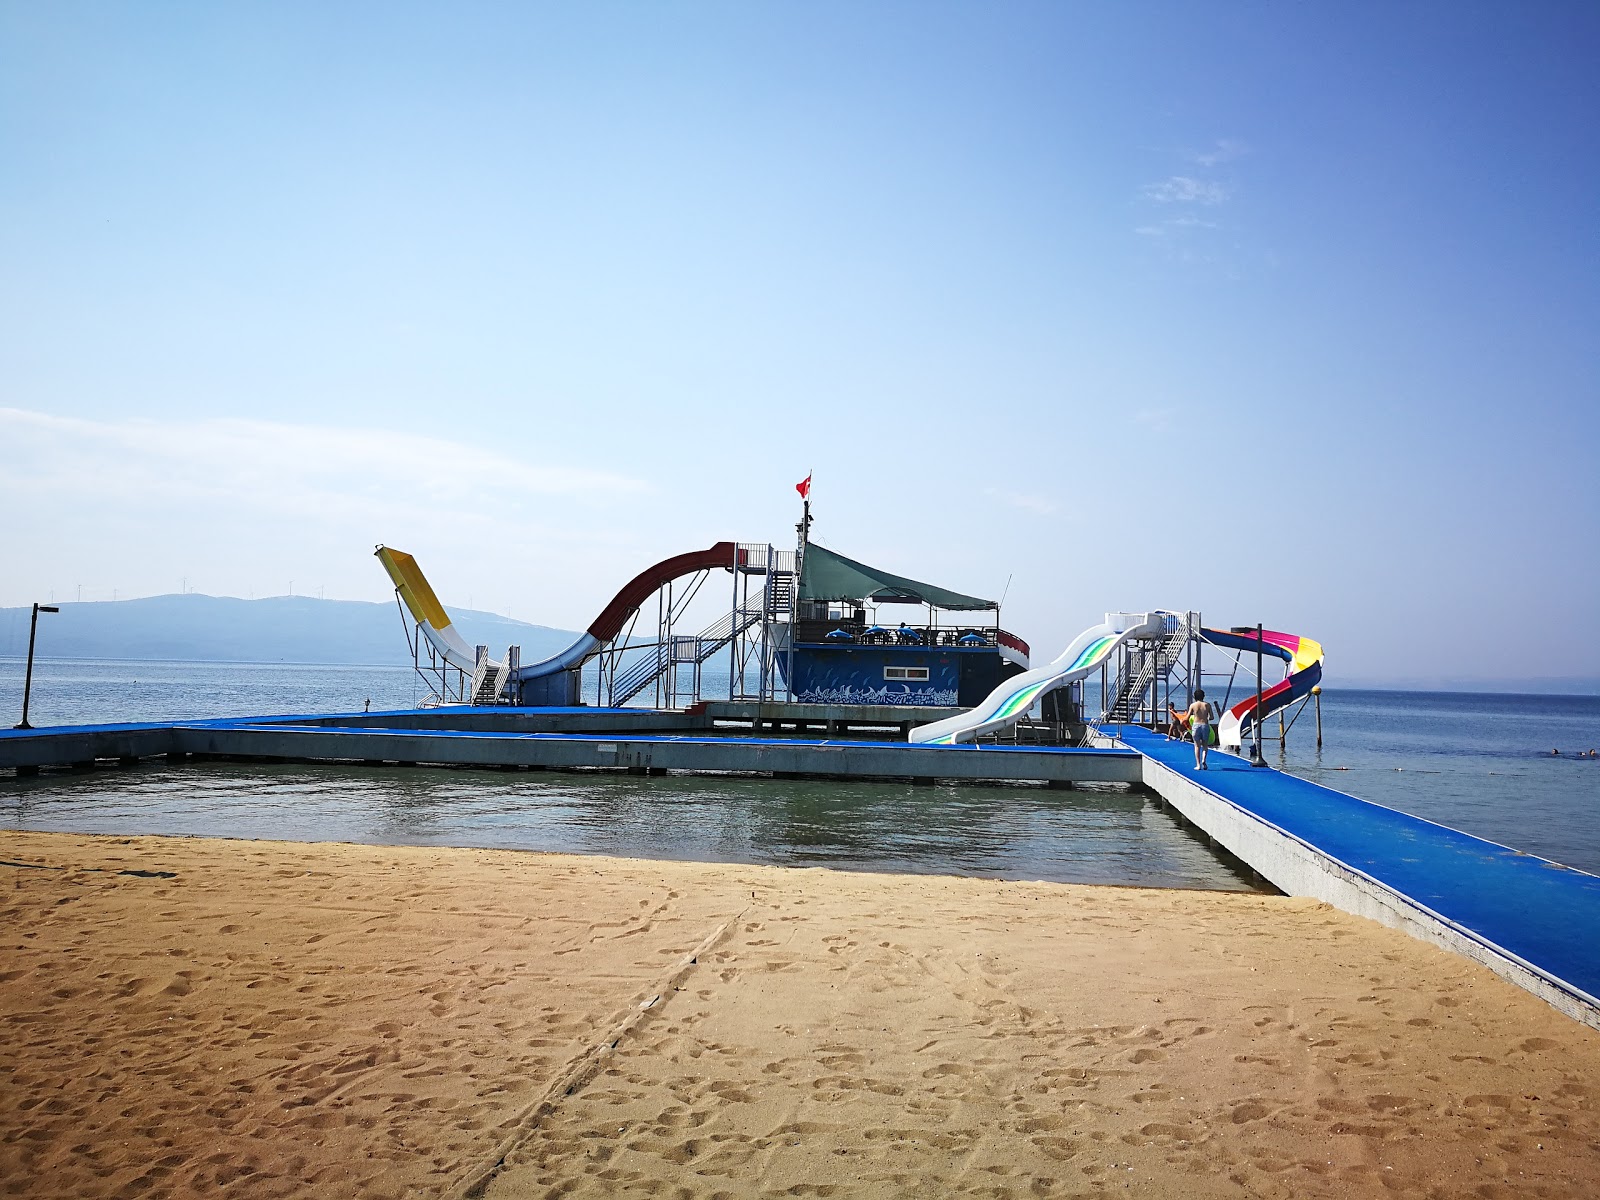 Fotografija Erdek beach II priljubljeno mesto med poznavalci sprostitve